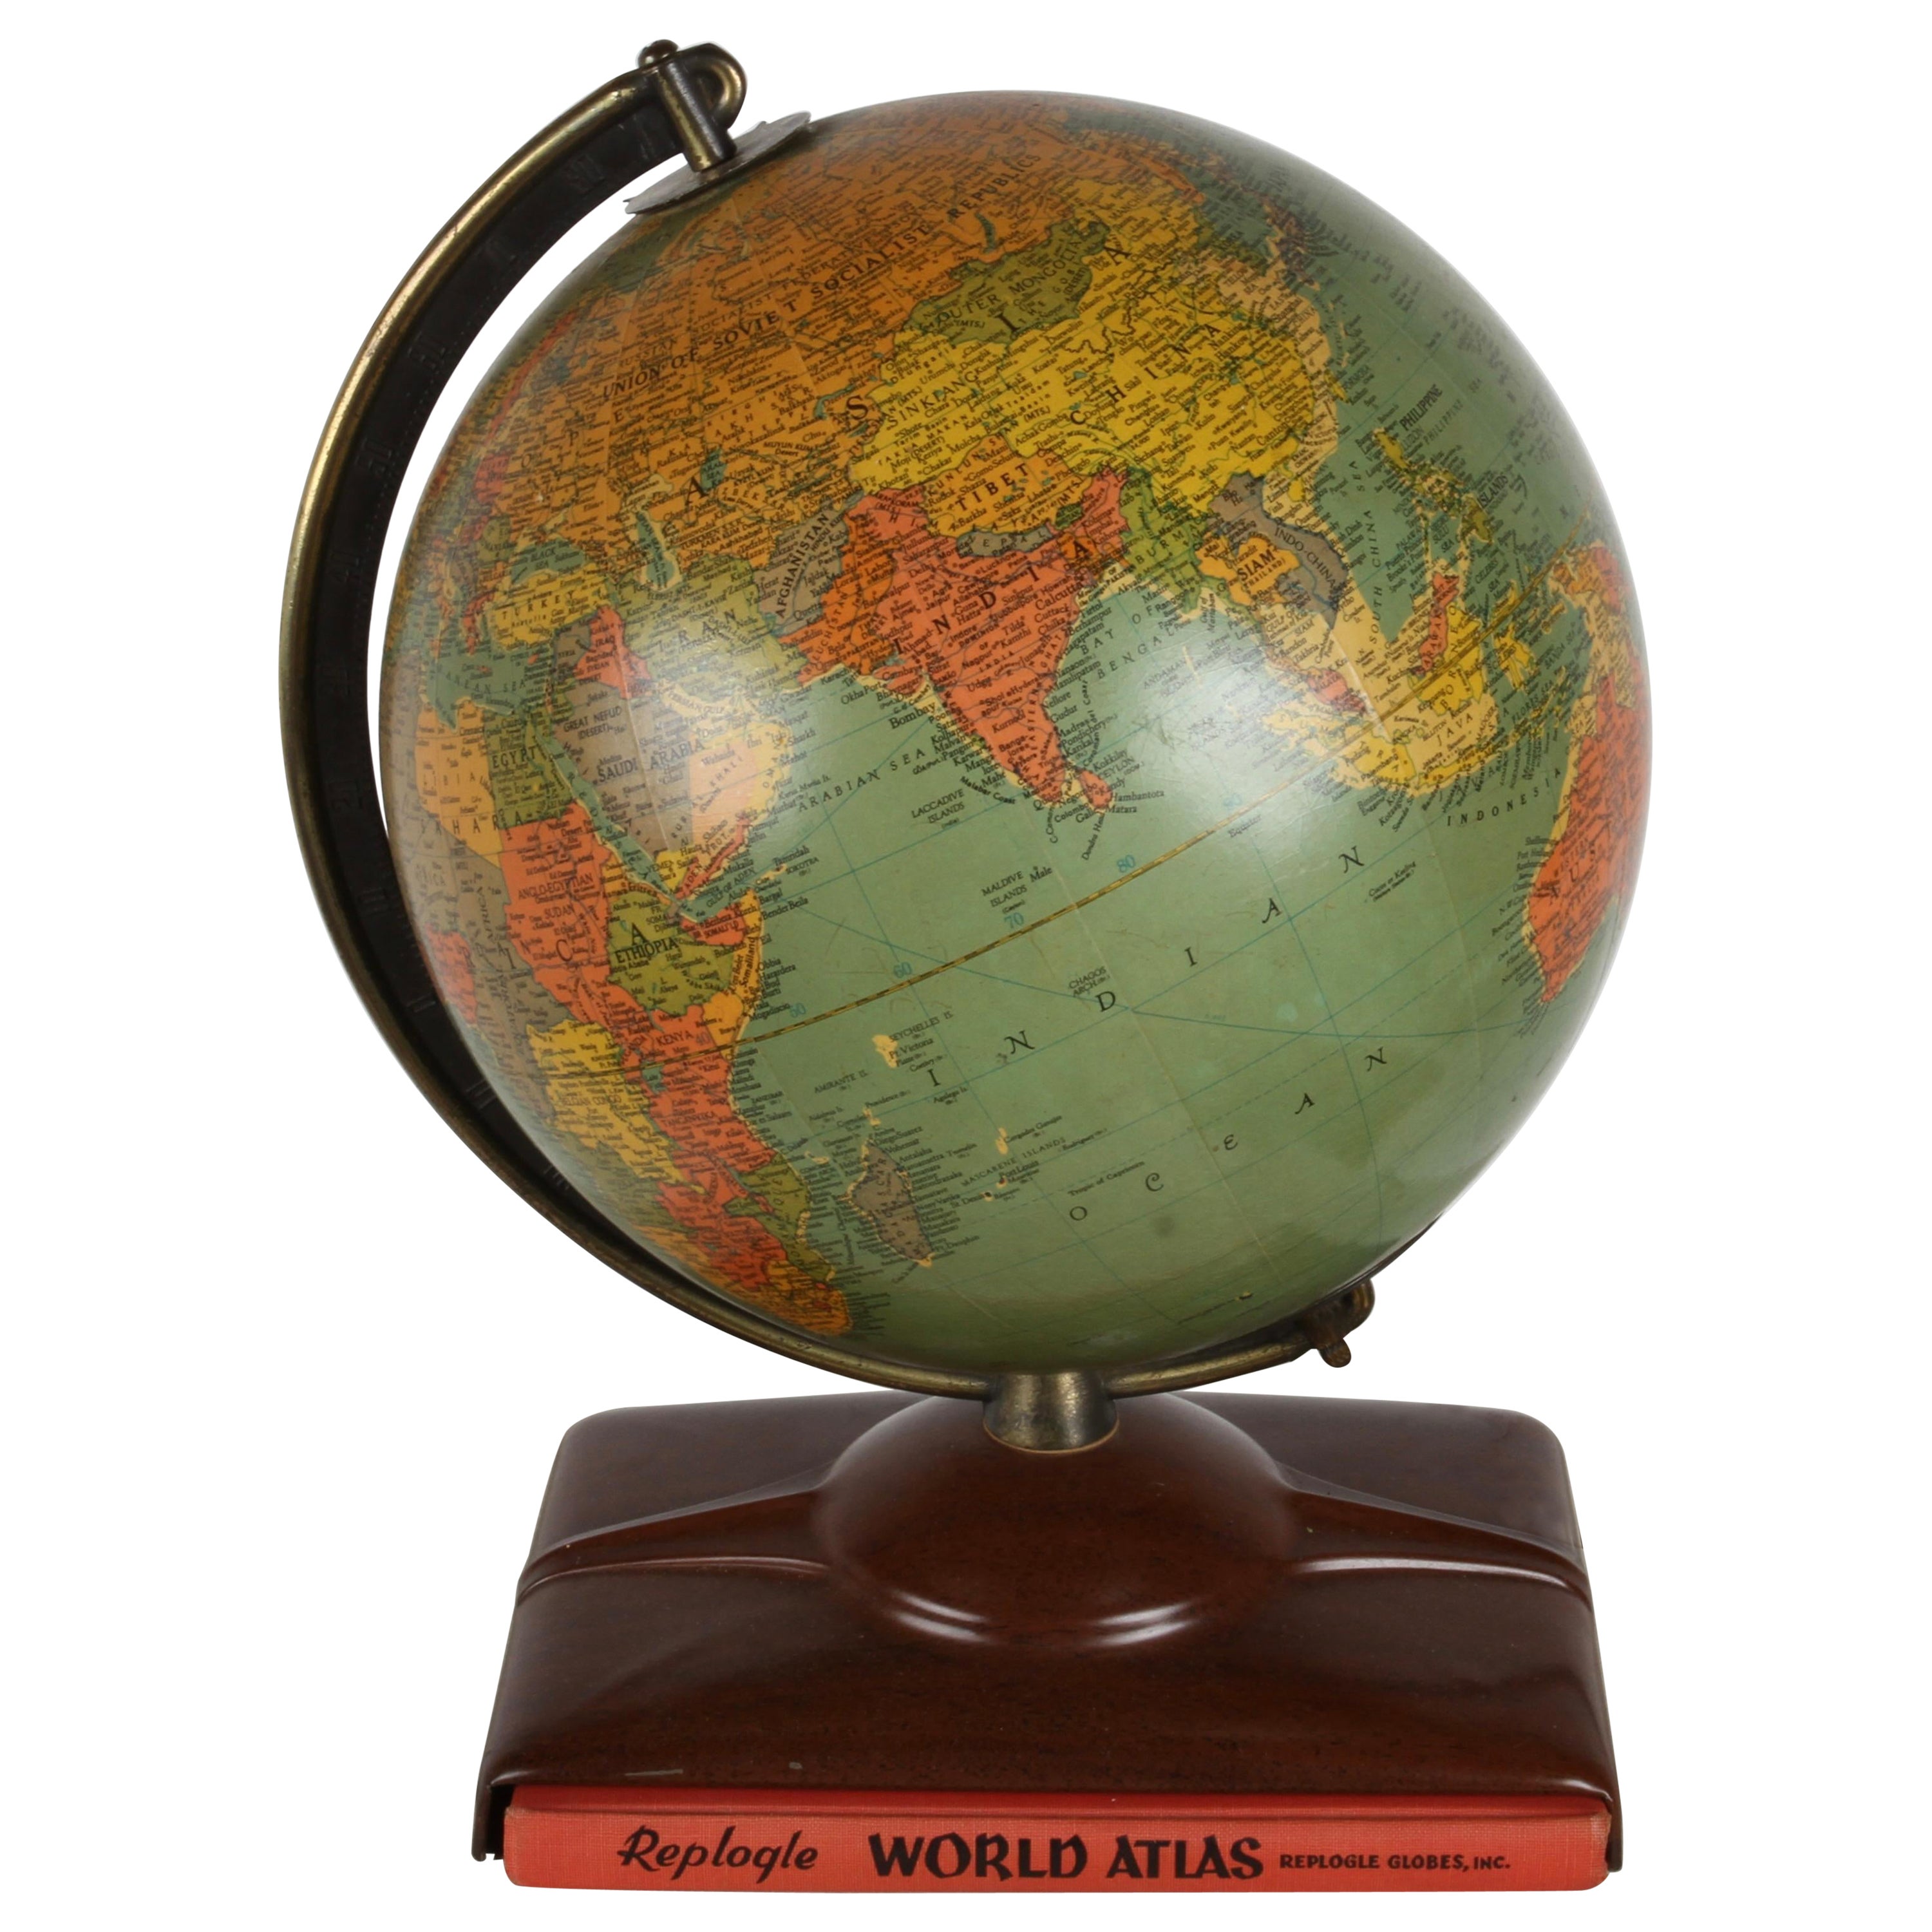 Globe en verre illuminé de 10" avec Atlas, années 1950, The Moderns Modernes 